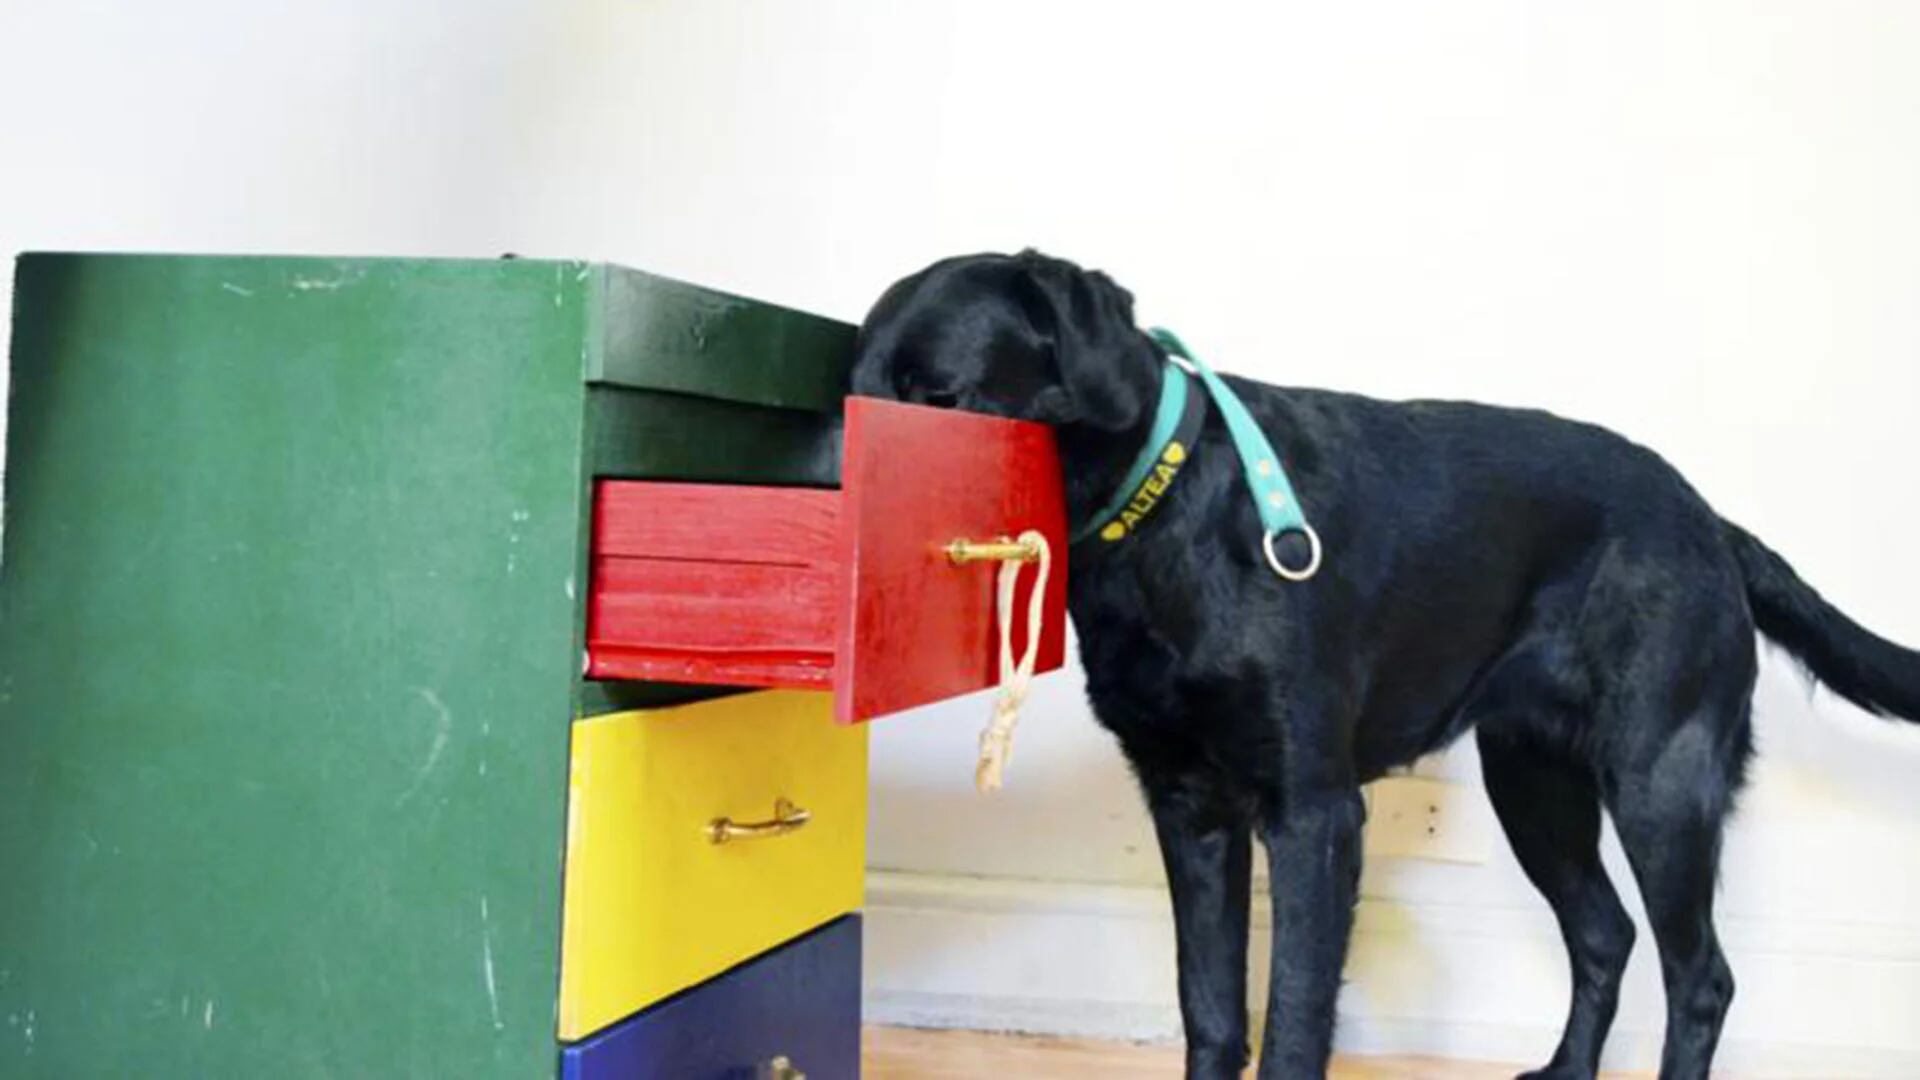 Durante el entrenamiento a un perro de asistencia aprende a sacar y dejar cosas de un cajón. (Bocalán)